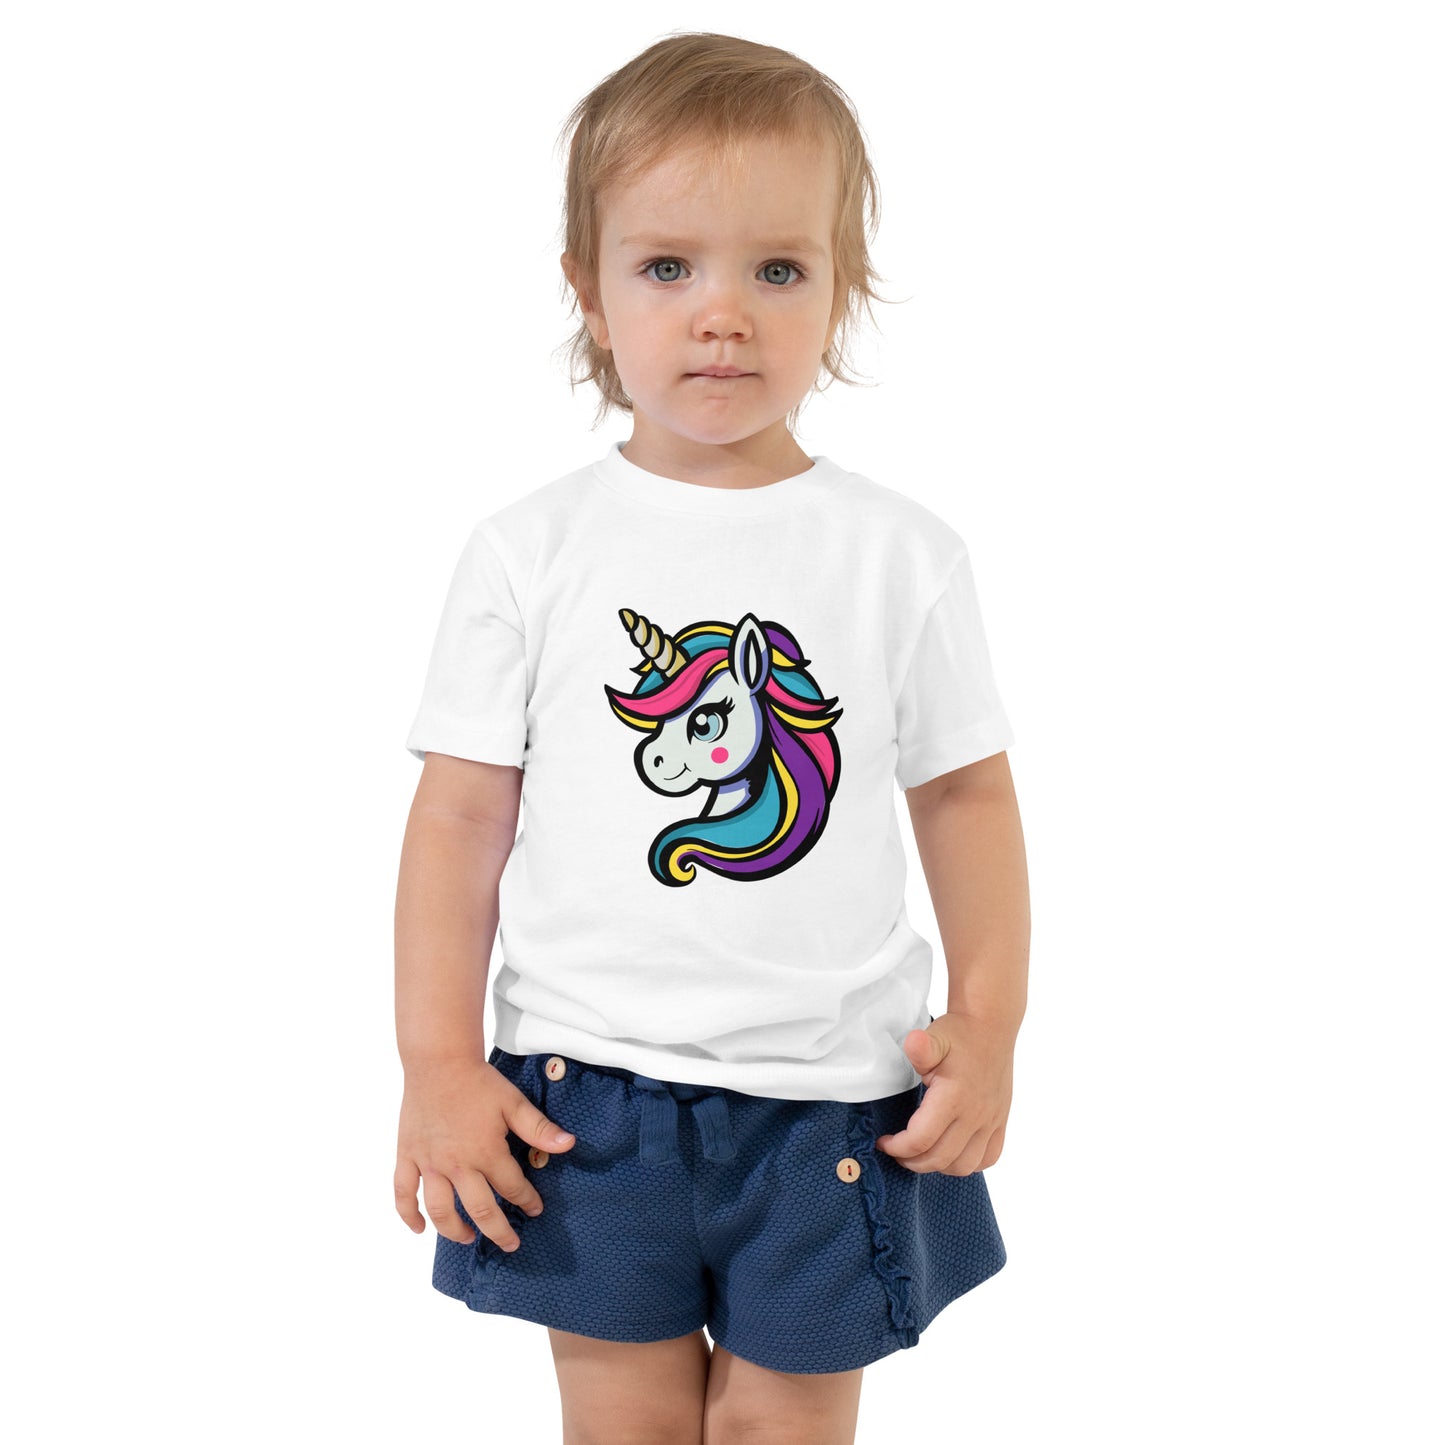 يونيكورن - قميص بأكمام قصيرة للأطفال